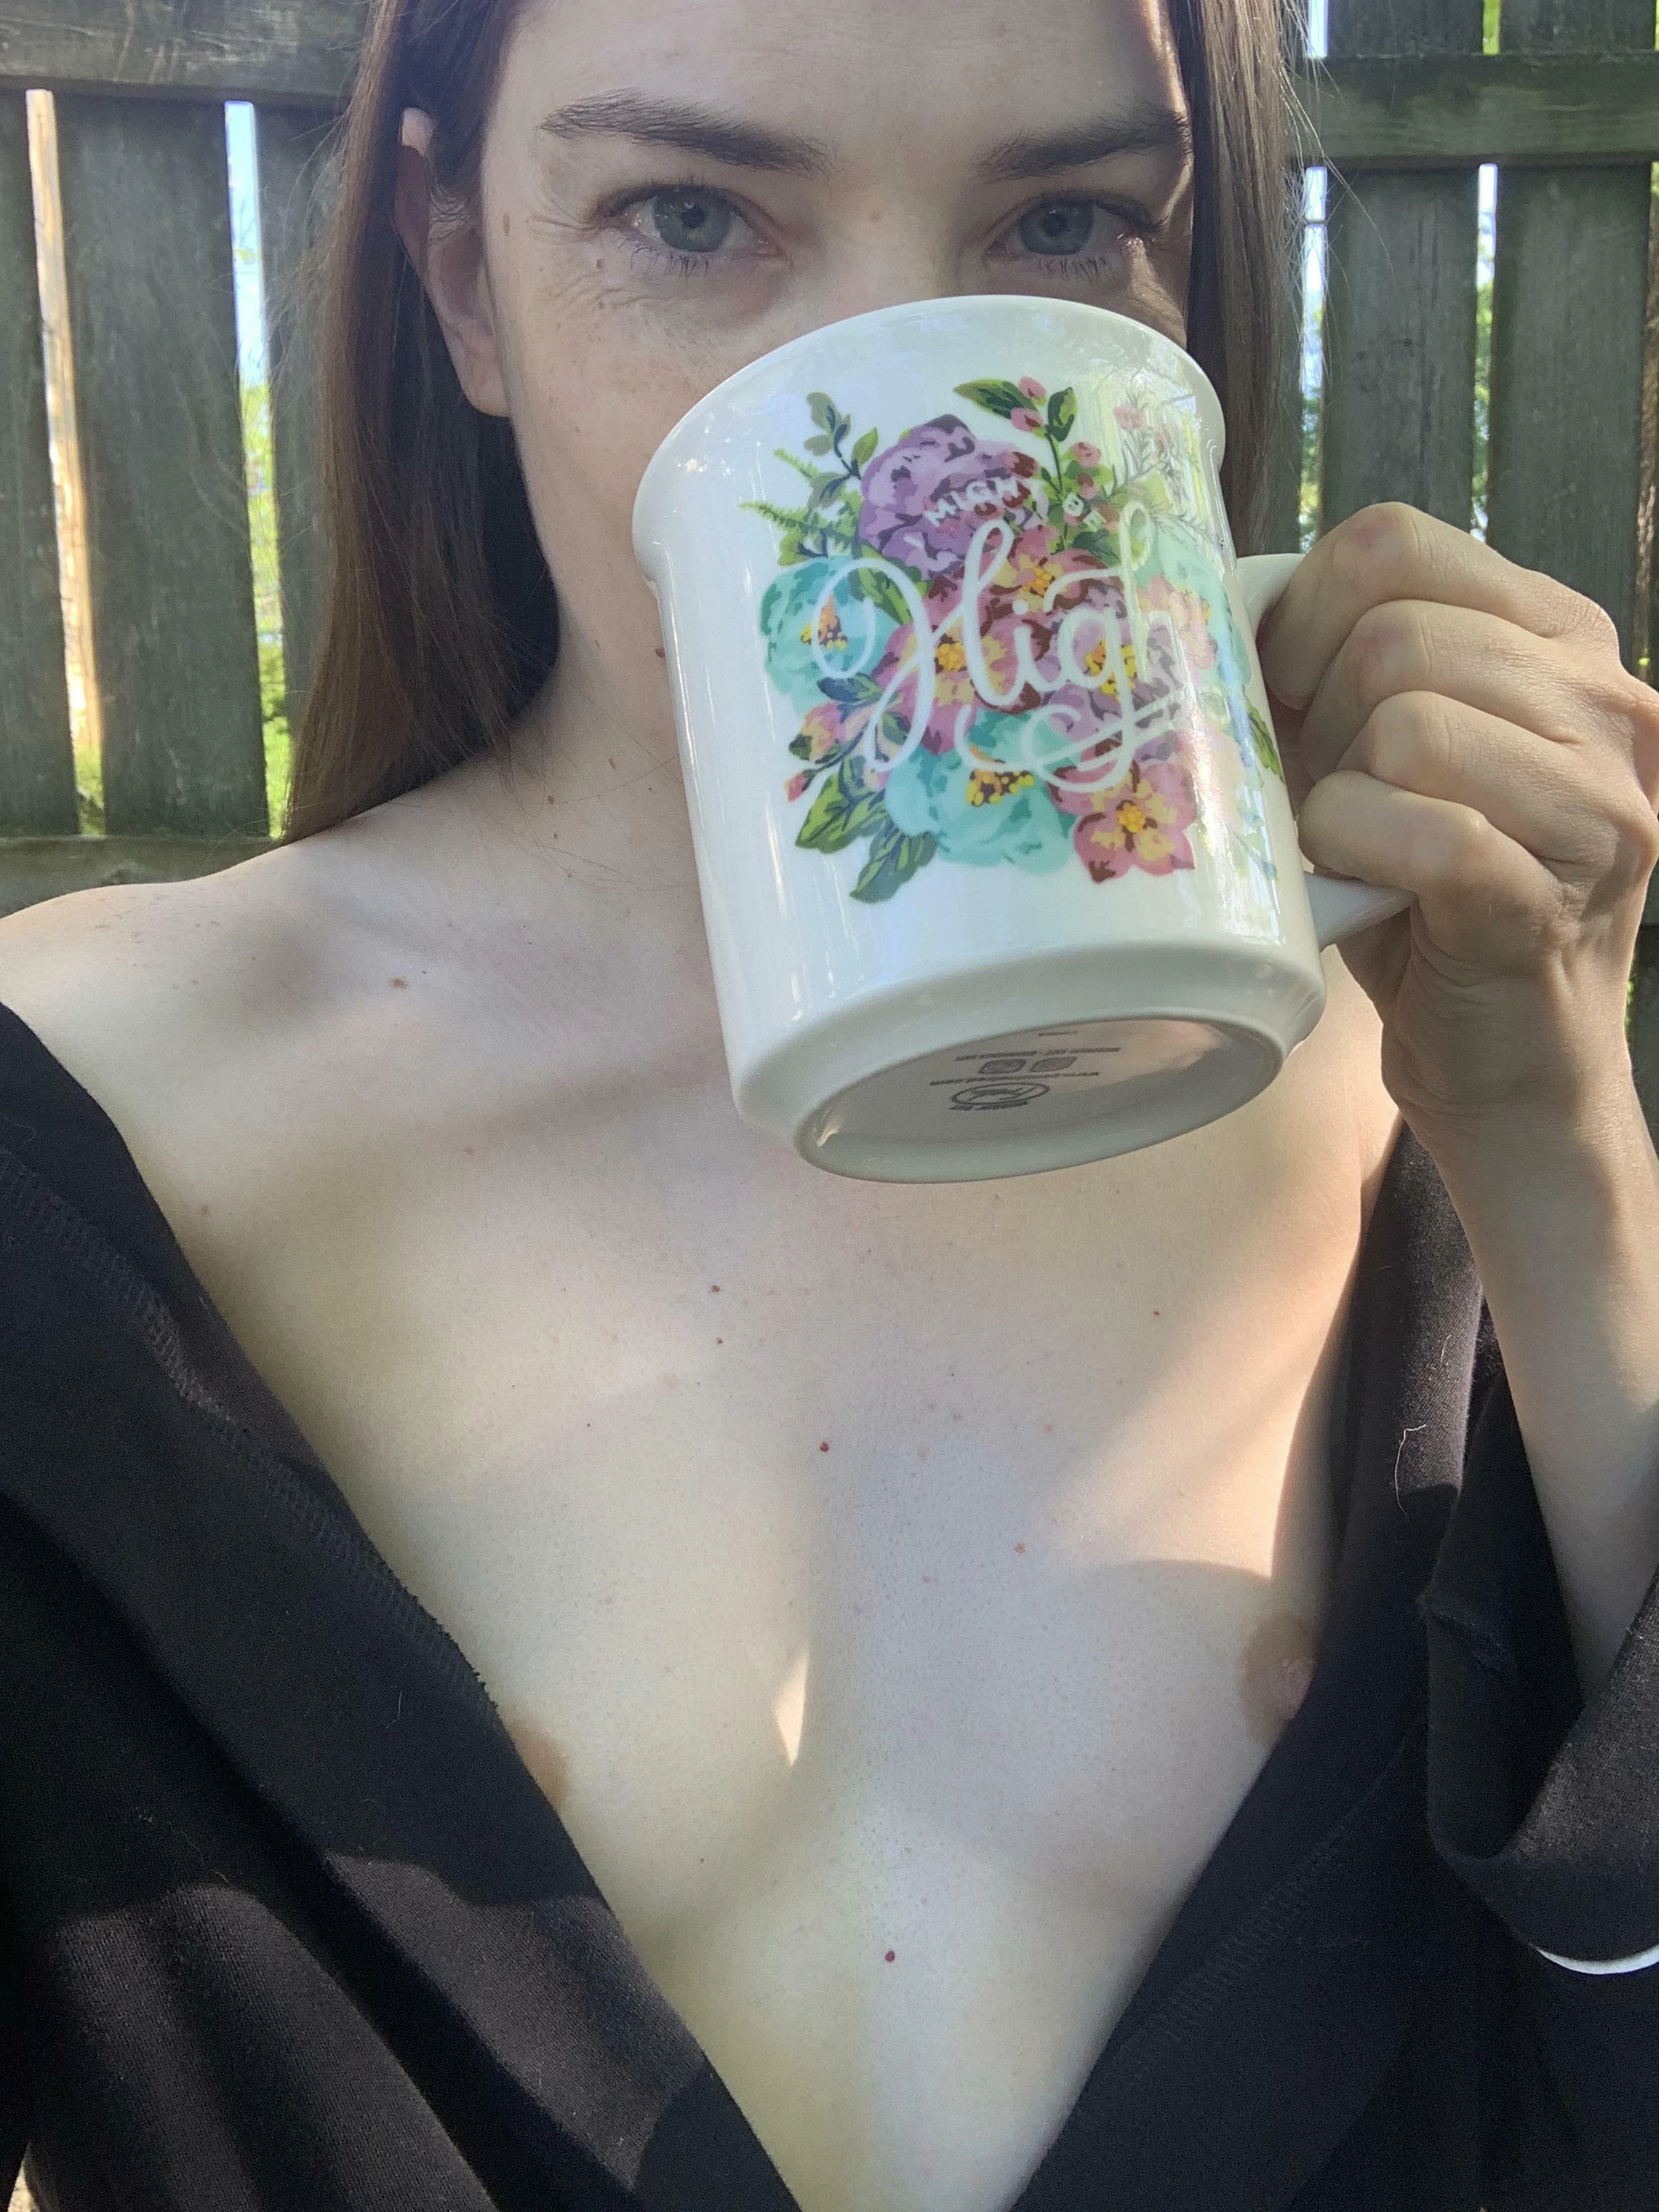 Morning coffee in the backyard